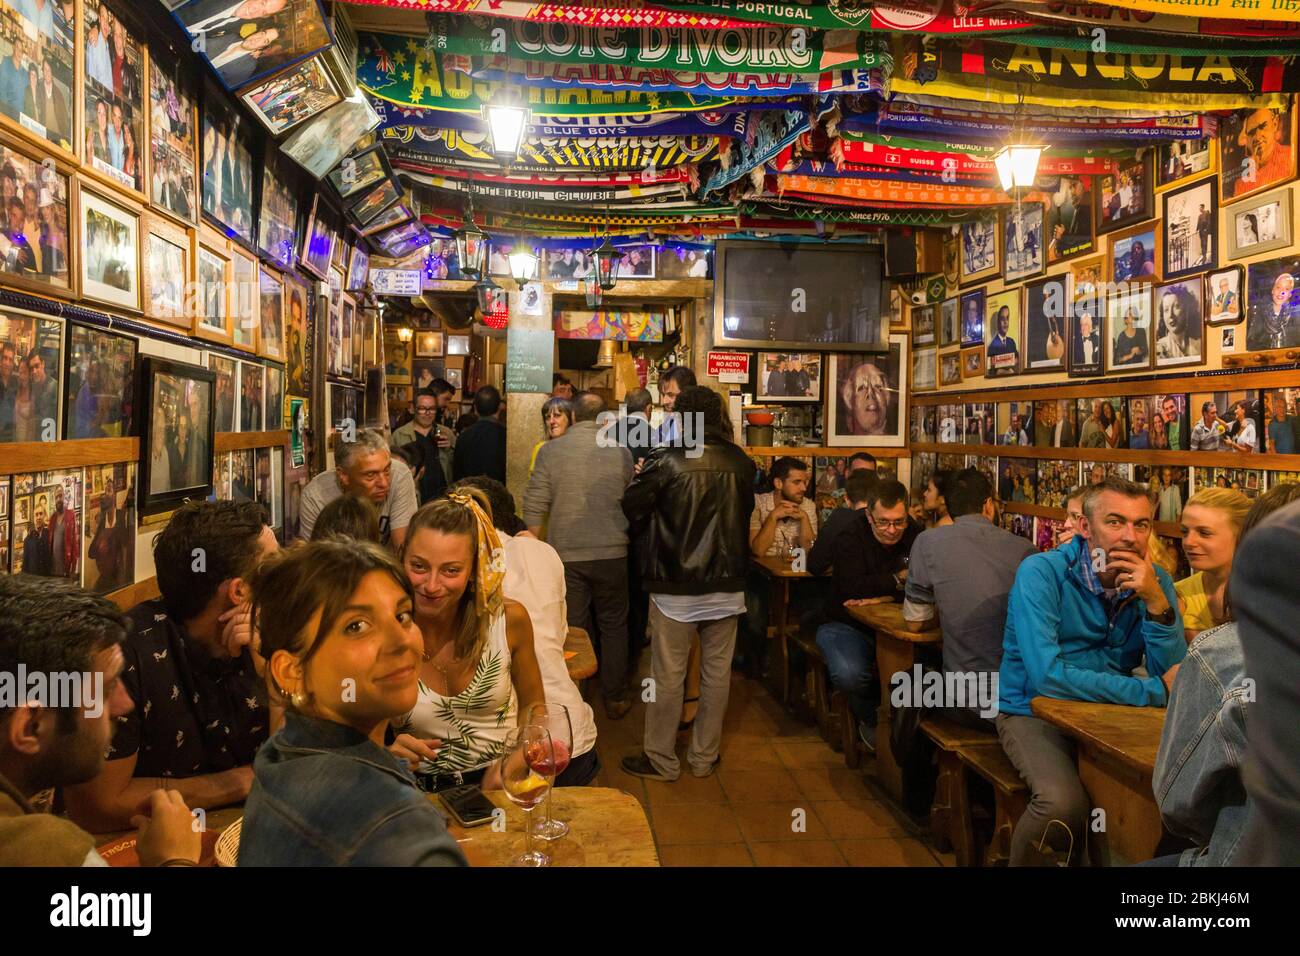 Portugal, Lisbonne, quartier Bairro Alto, Bairro Alto est l'un des quartiers les plus fréquentés de Lisbonne la nuit avec une forte concentration de bars et restaurants, l'intérieur bondé d'un bar Fado Banque D'Images